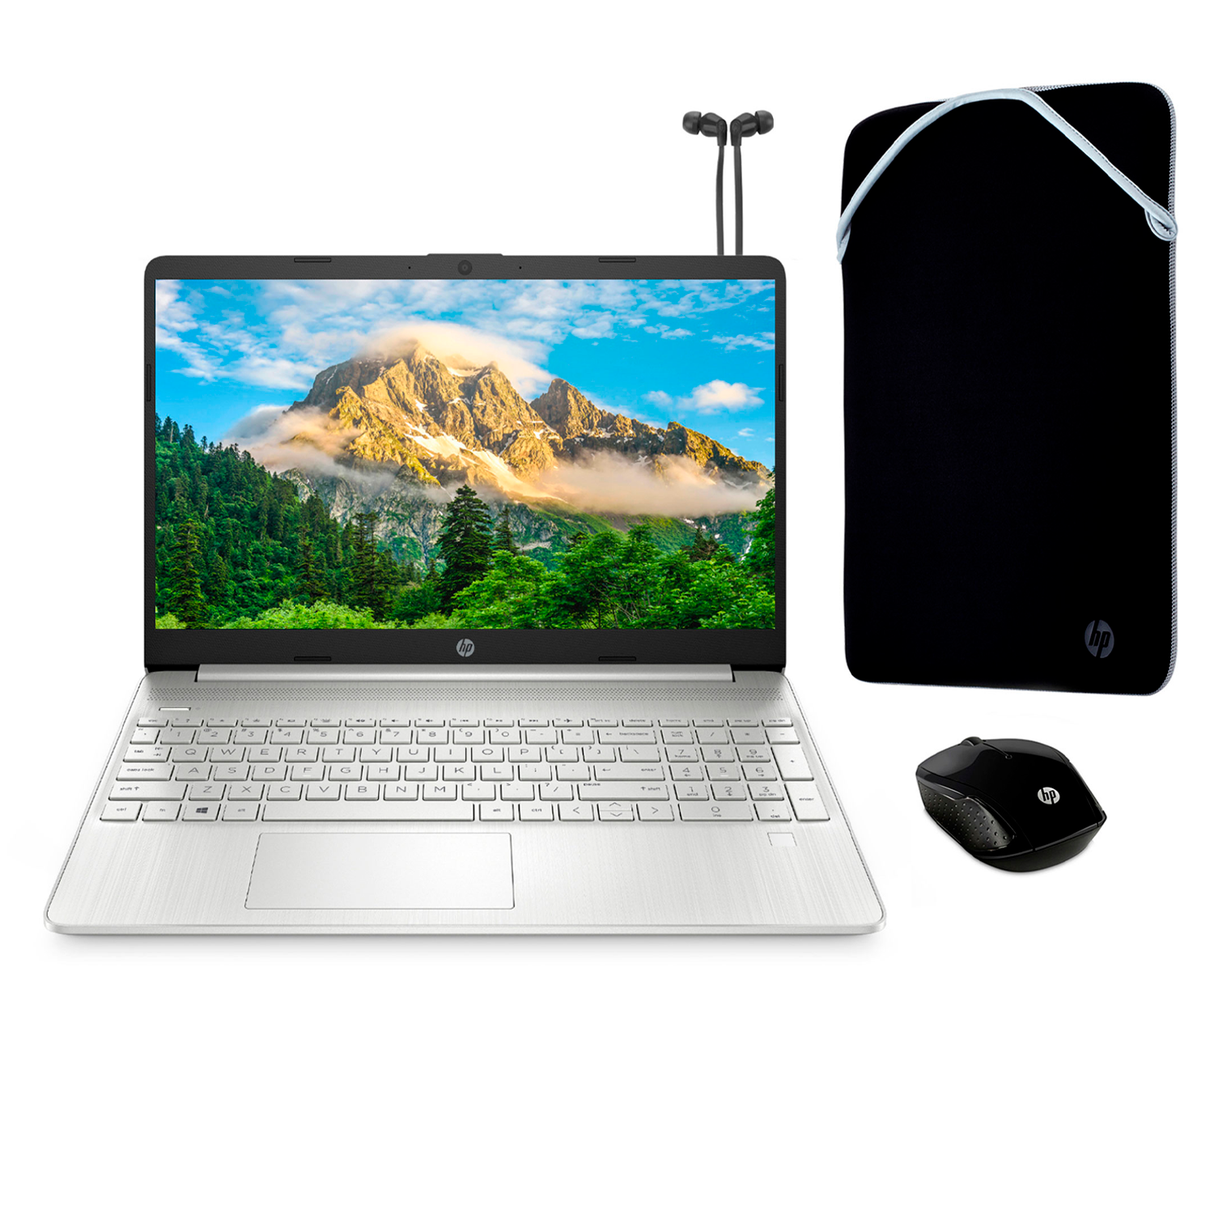 Laptop HP 15-EF2519LA Ryzen 5 5500U Ram 8GB Disco 512GB SSD 15.6" HD Windows 11 (Open BOX)